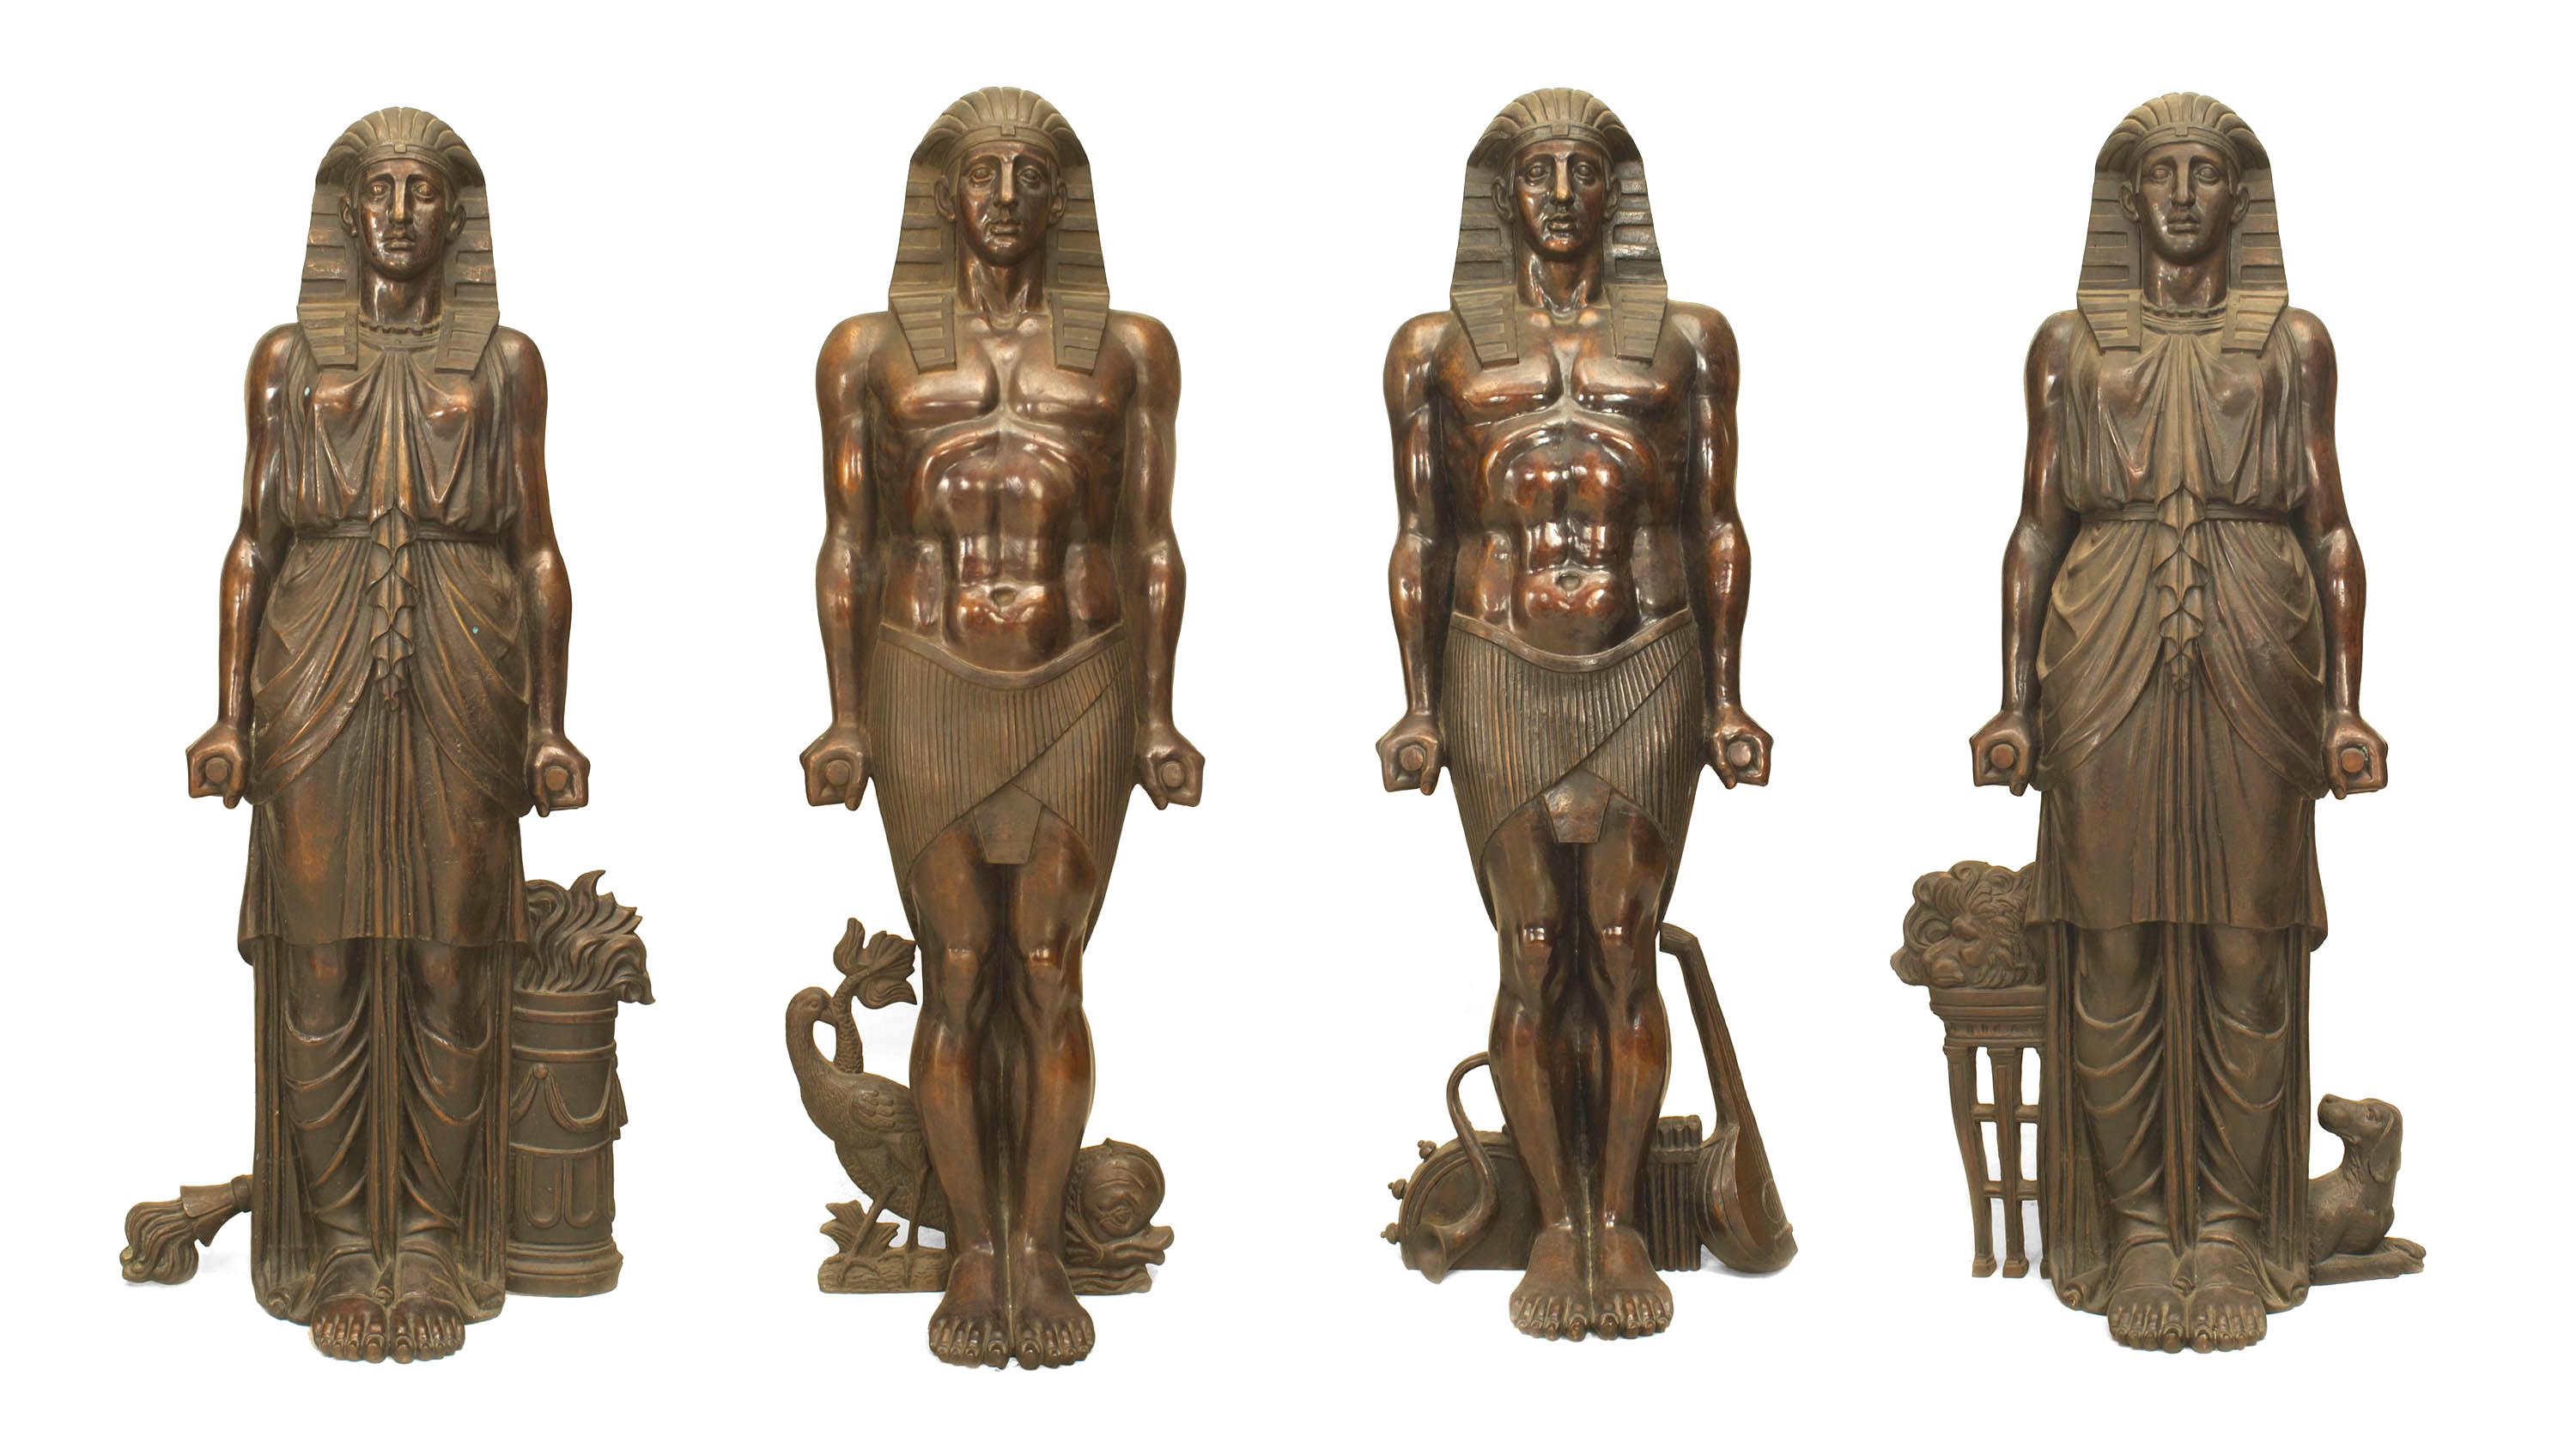 Ensemble de 4 figures égyptiennes monumentales russes (19ème siècle) en bronze emblématiques des Mois sur des bases peintes d'après celles de C.C. & M. A&M pour le Vestibule égyptien du Palais de Pavlovsk (PRIX DE L'ENSEMBLE)
